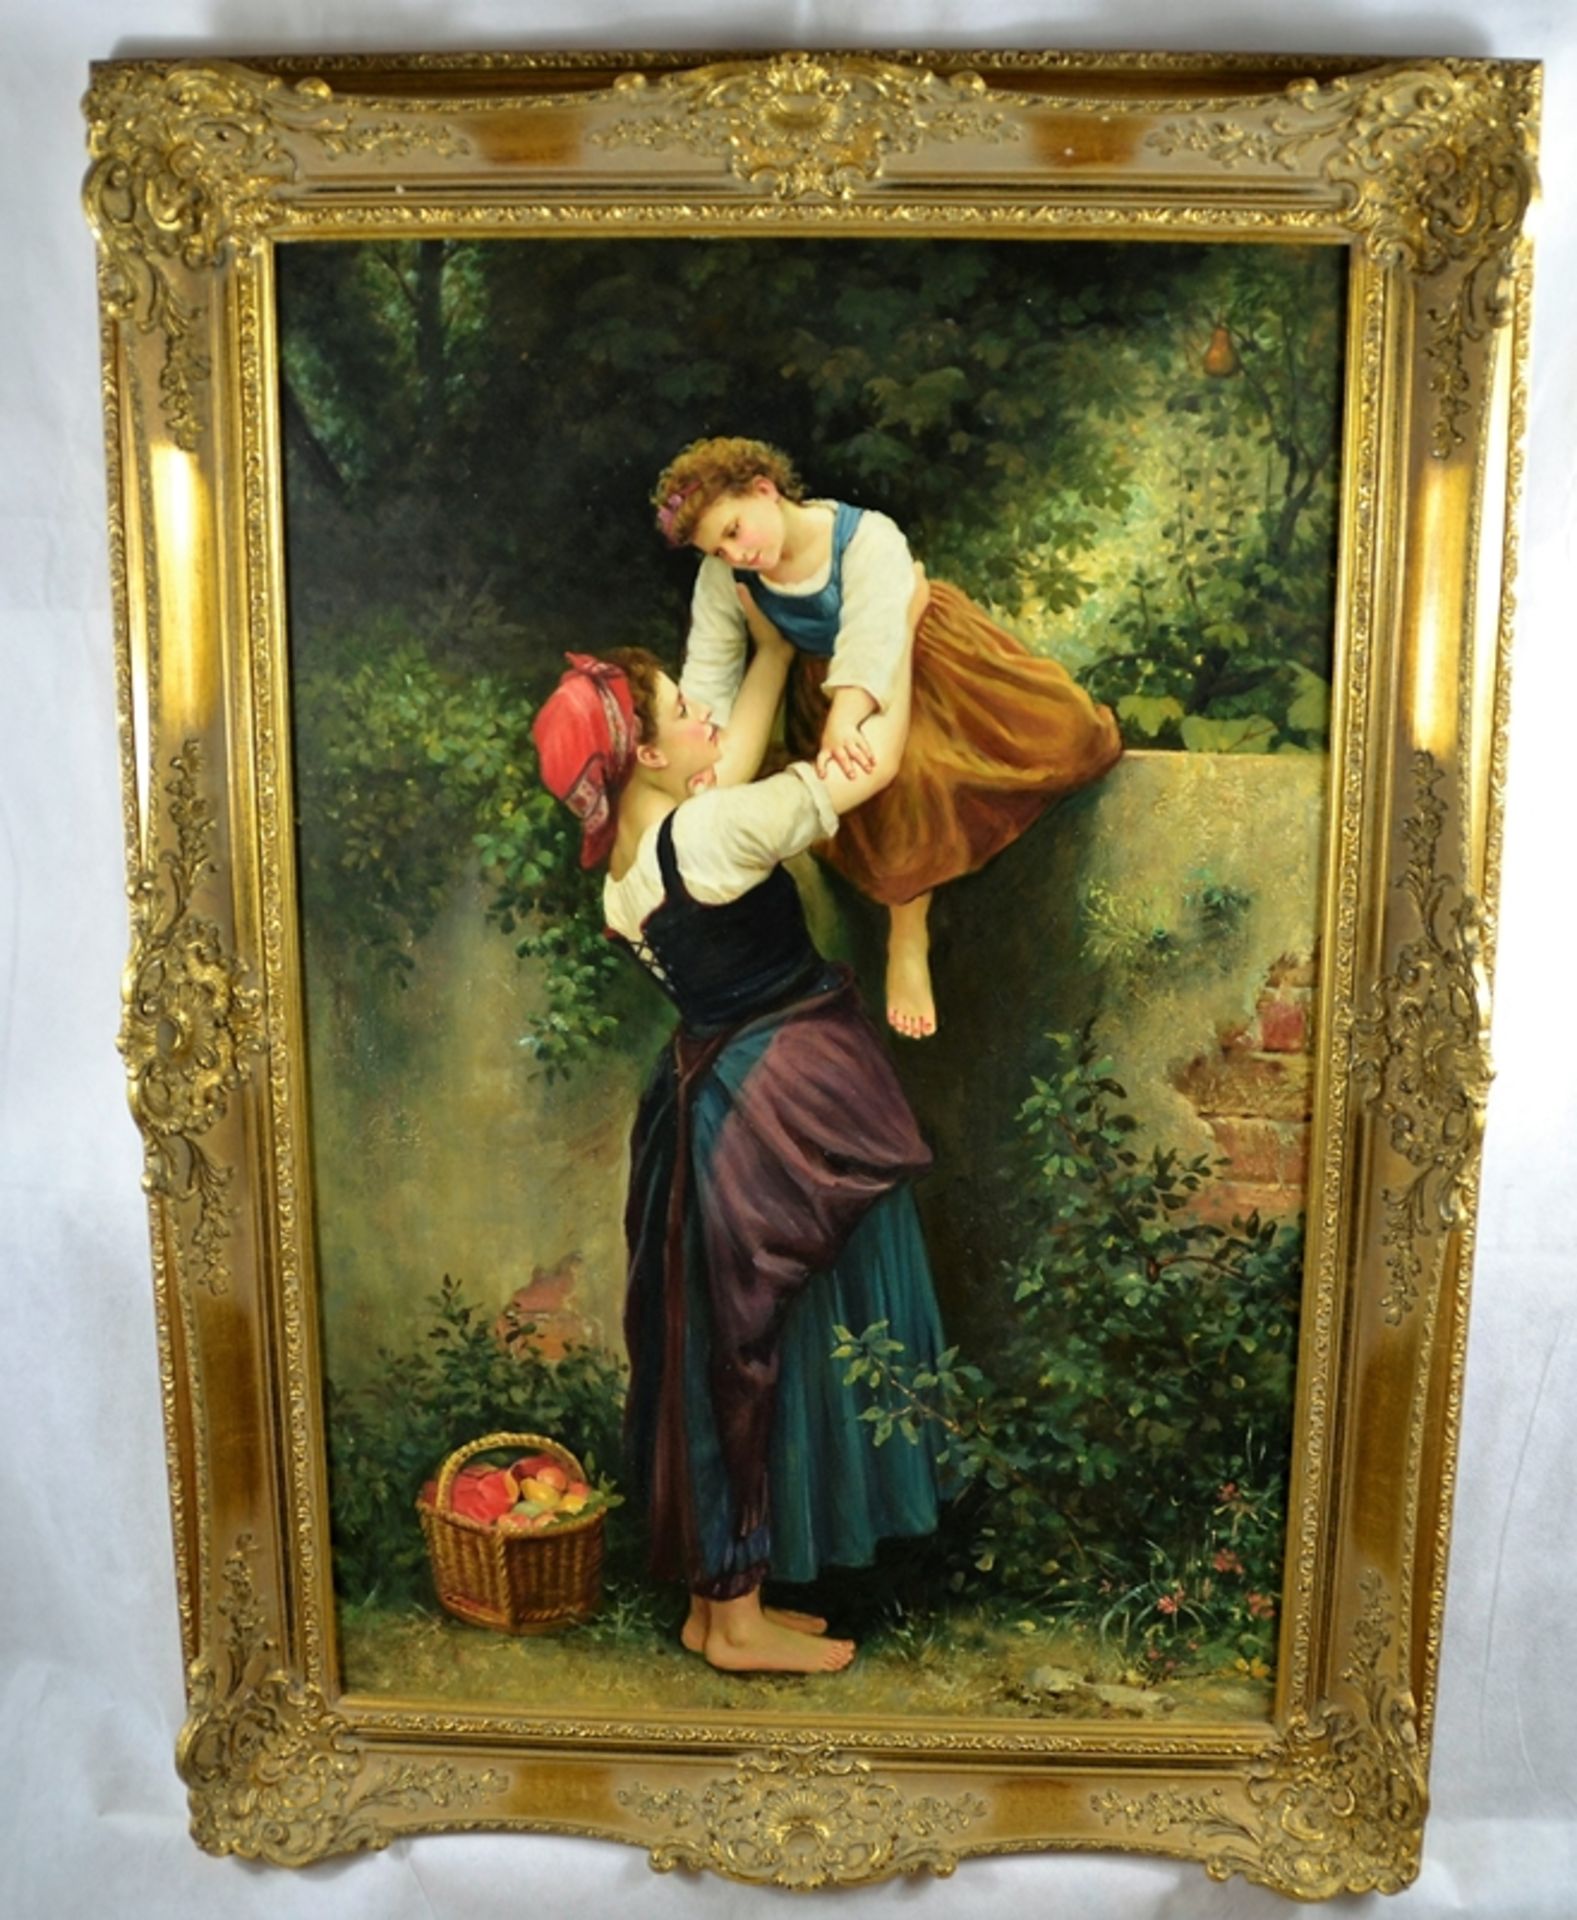 Gemälde Mutter Tochter Obstgarten signiert Steinmann 20 Jhdt., Öl auf Leinwand, ca. 109 x 78 cm (mi